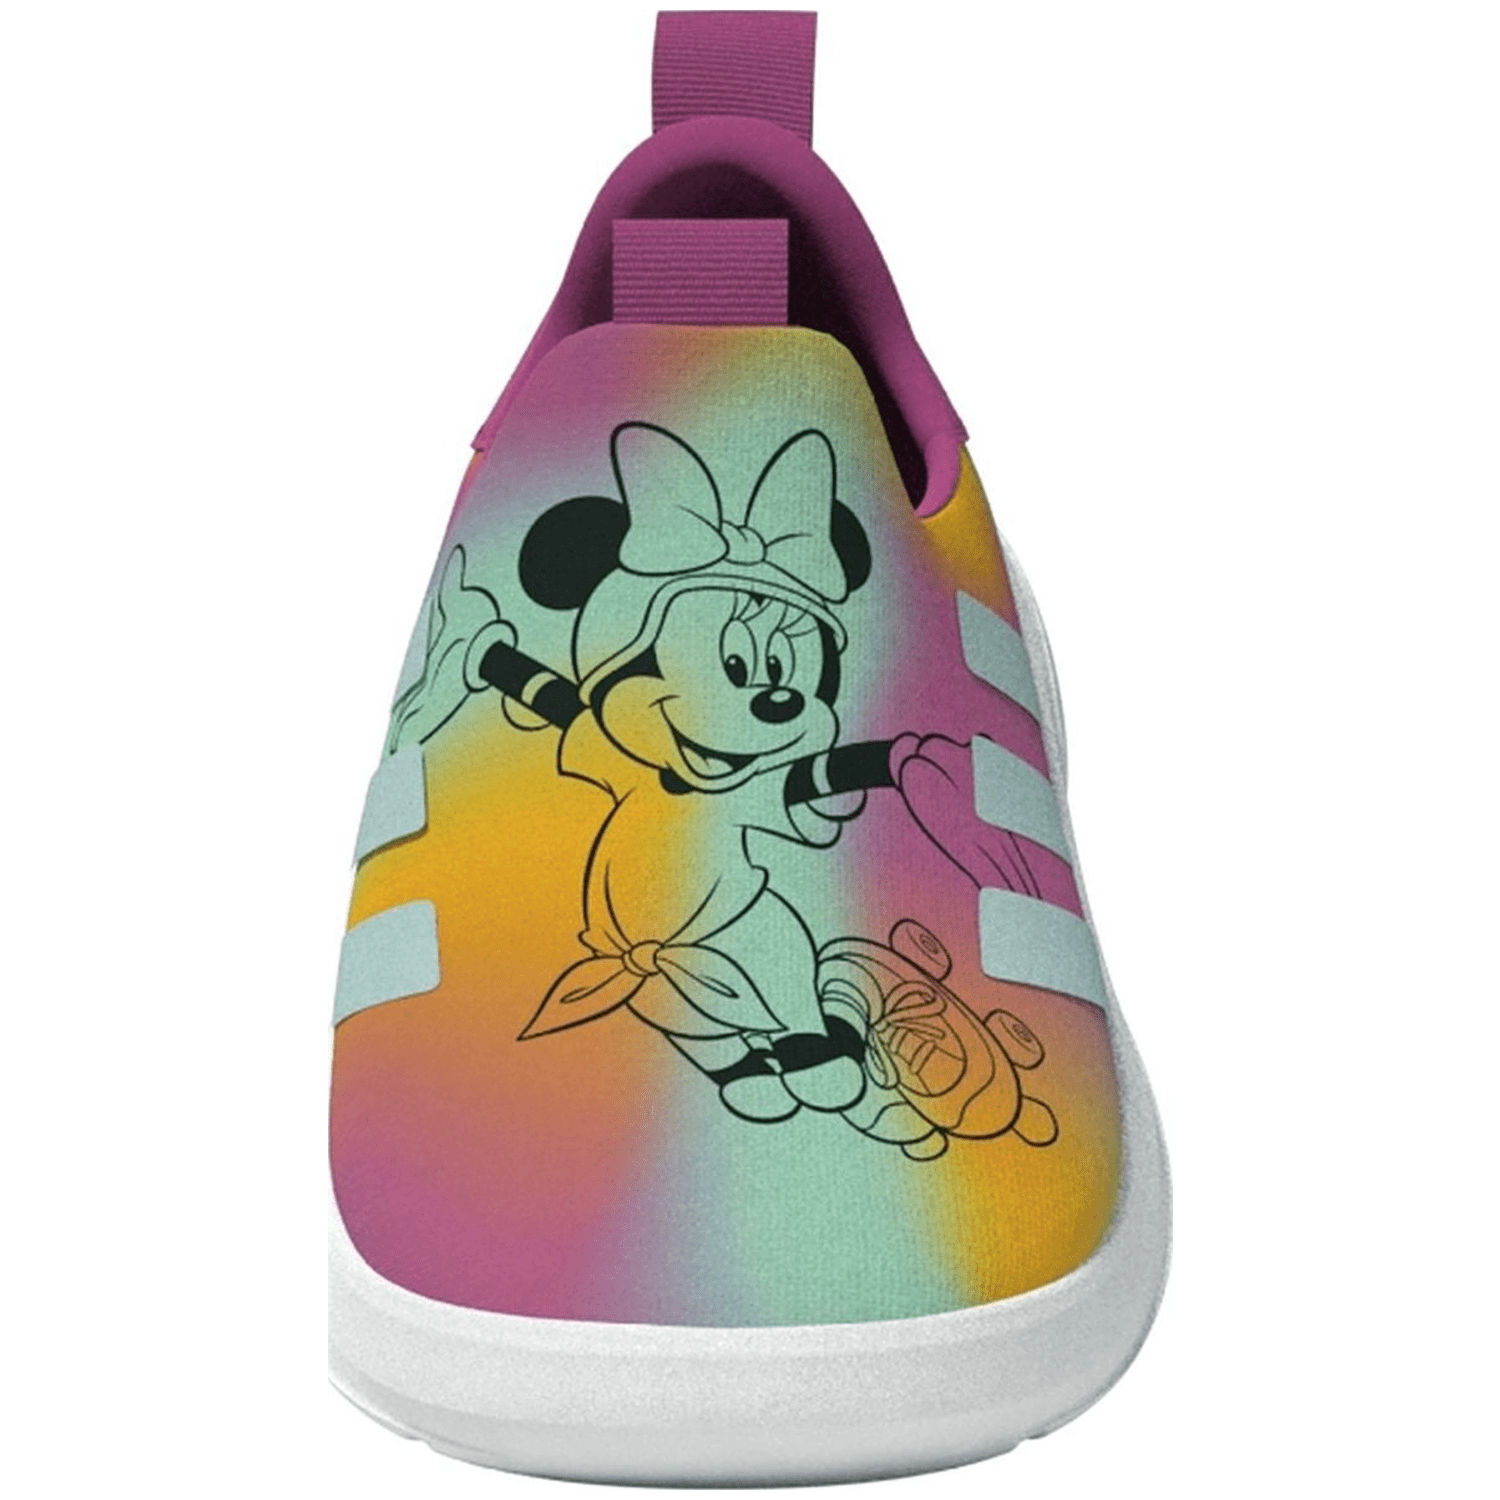 Adidas Monofit x Disney Kids Schuh Kinder